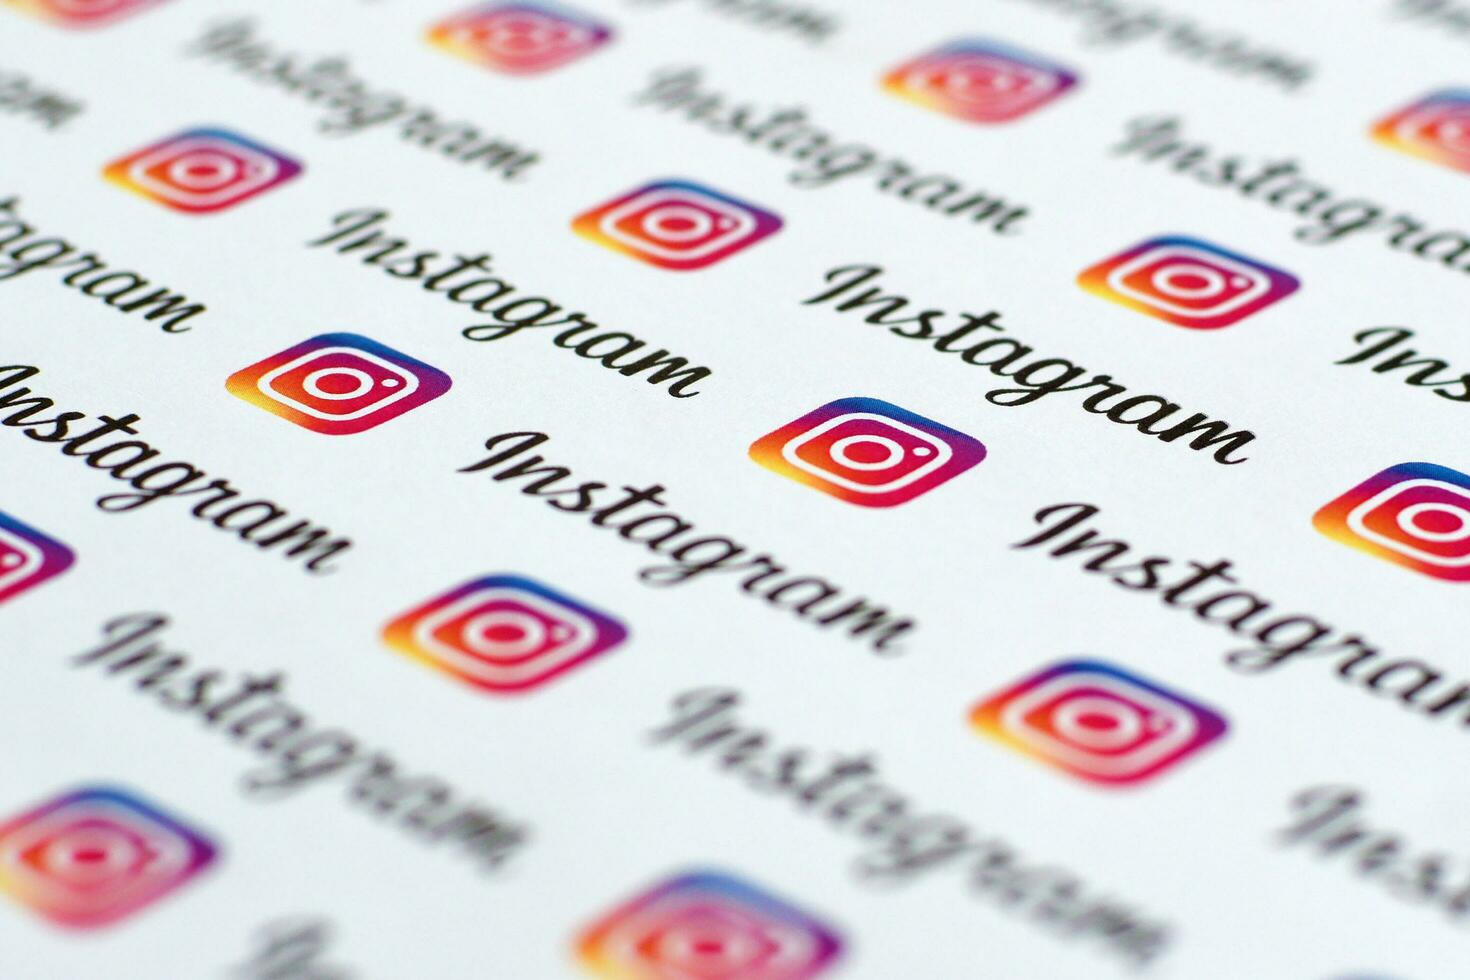 Instagram mönster tryckt på papper med små Instagram logotyper och inskriptioner. Instagram är amerikan Foto och videodelning social nätverkande service ägd förbi Facebook